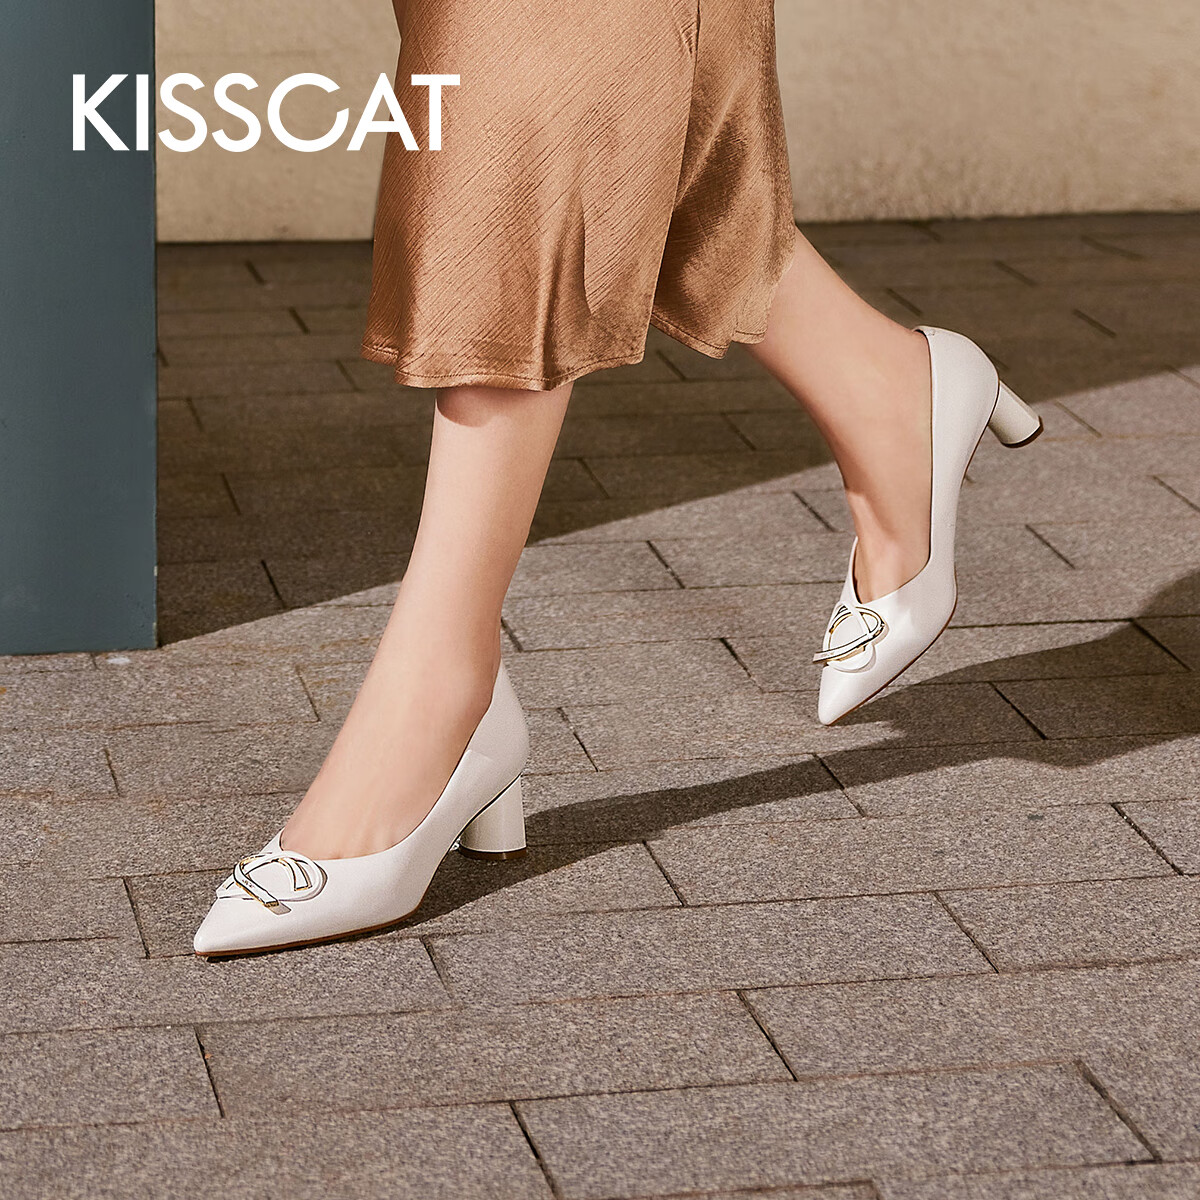 KISSCAT接吻猫女鞋春秋新款浅口单鞋简约百搭小皮鞋尖头高跟鞋KA43100-10 白色 36